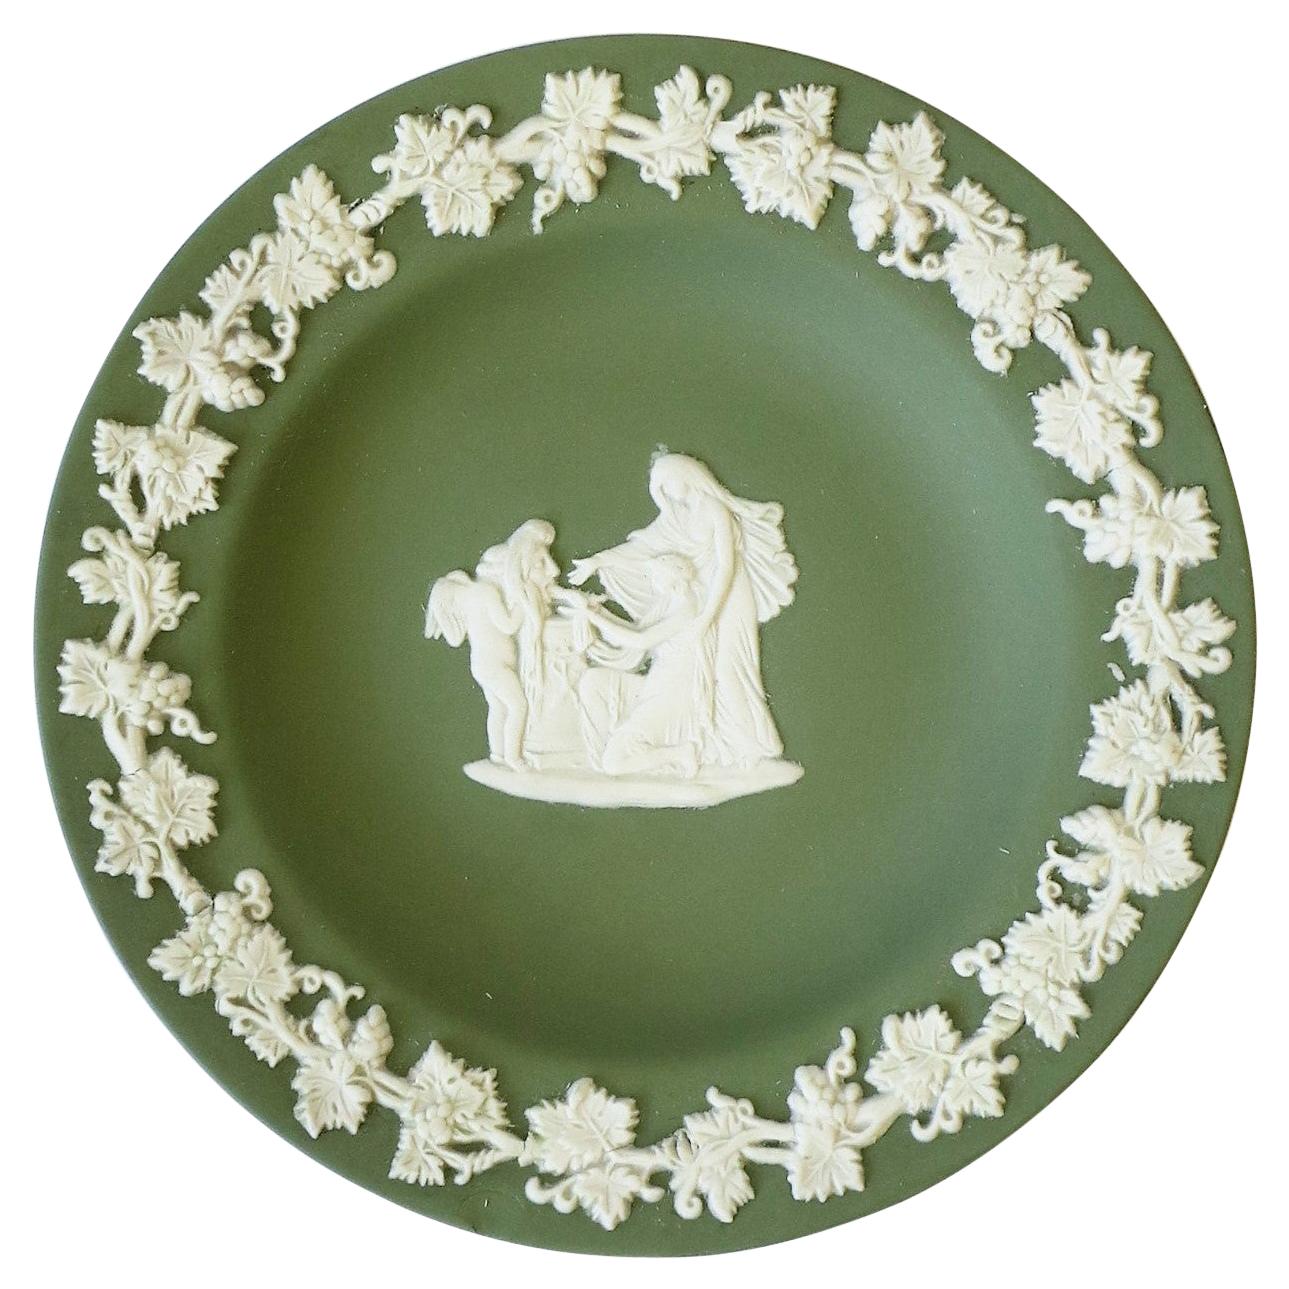 English Wedgwood Jasperware Jewelry Dish with Neoclassical Design